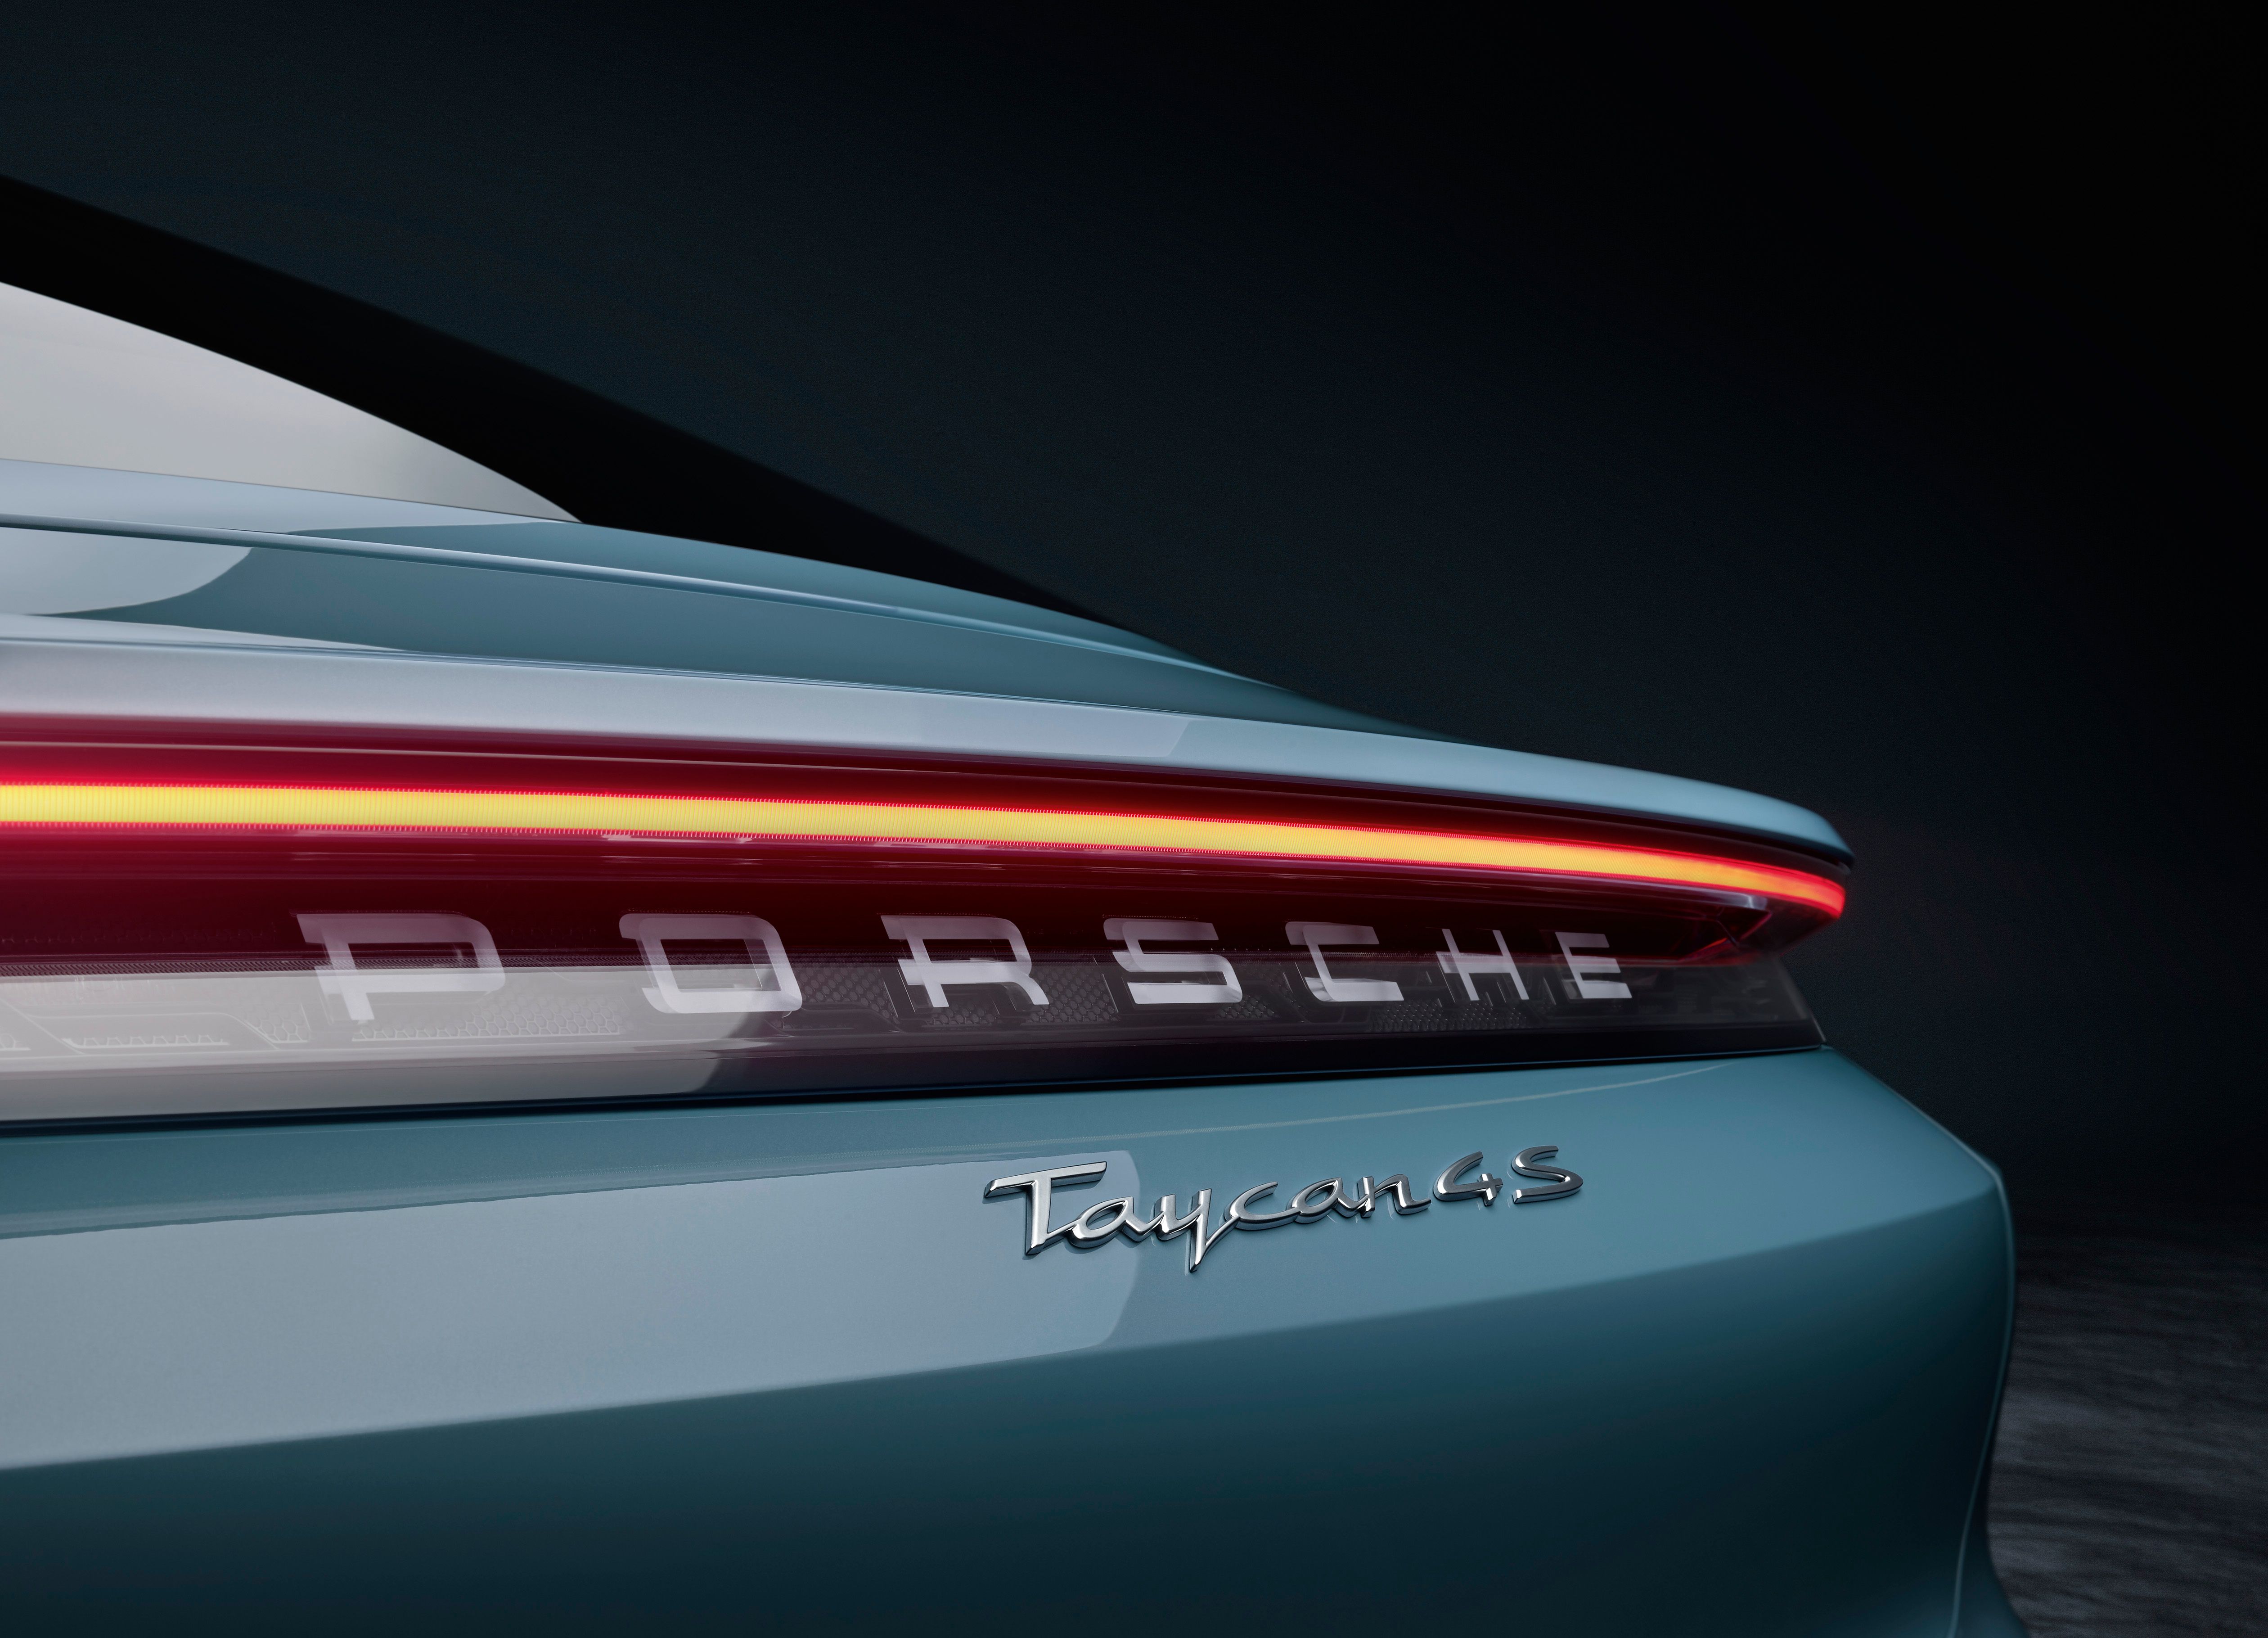 2020 Porsche Taycan